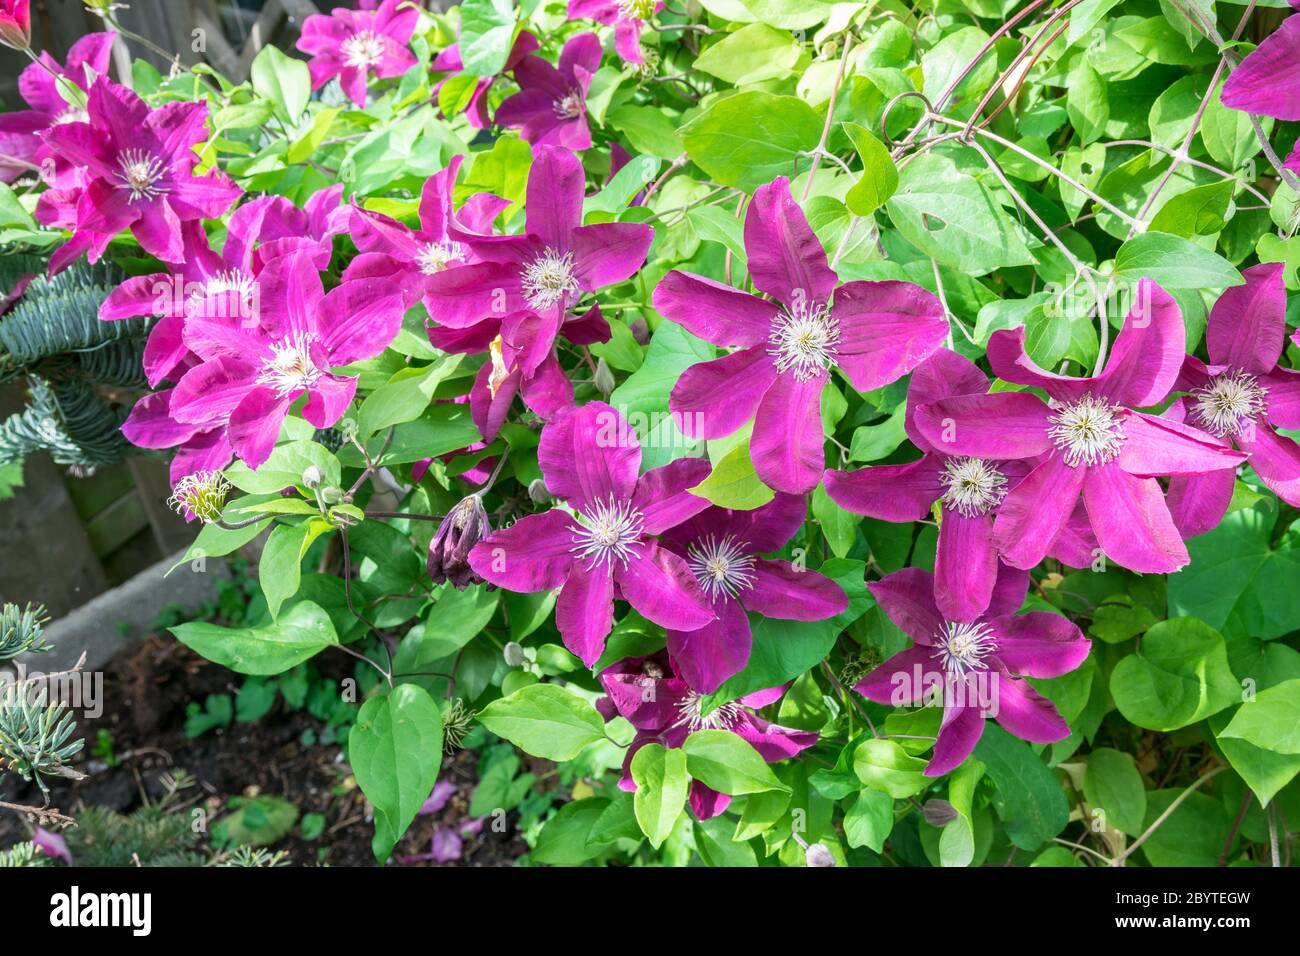 Grandes fleurs de clématis aux couleurs violettes dans un jardin Banque D'Images